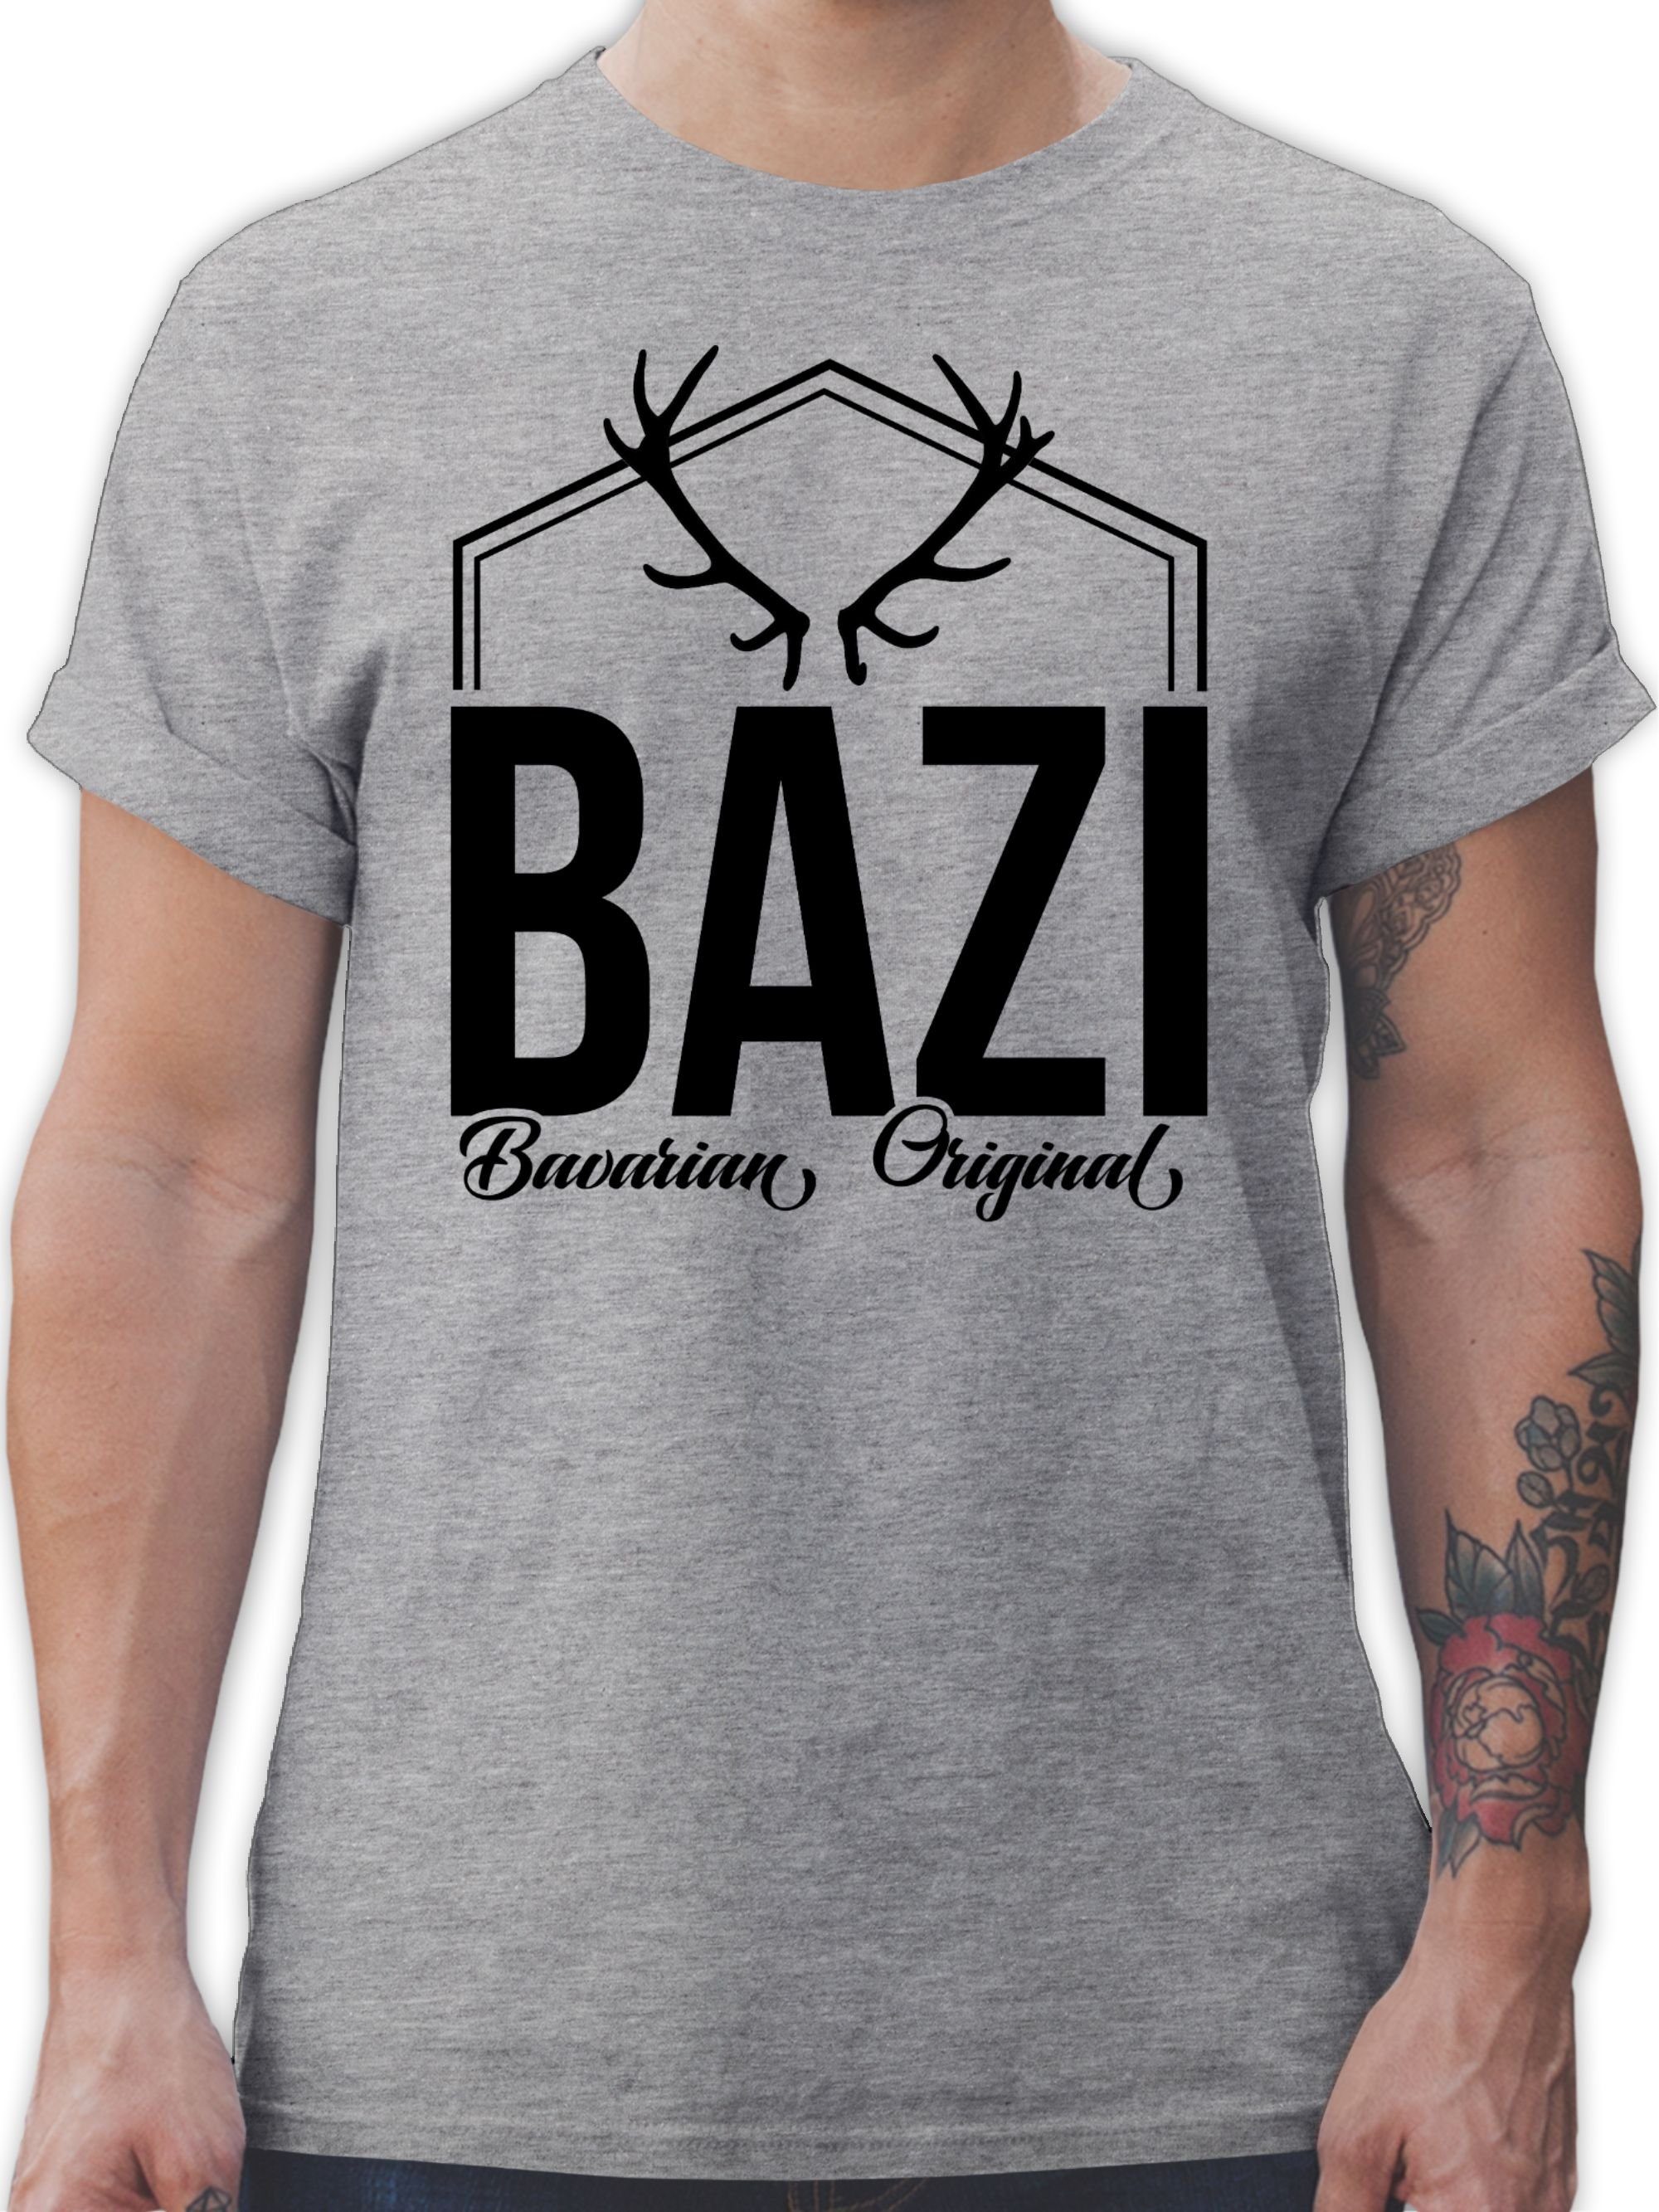 Shirtracer T-Shirt Bazi - Original Bavarian Bayern Männer 2 Grau meliert